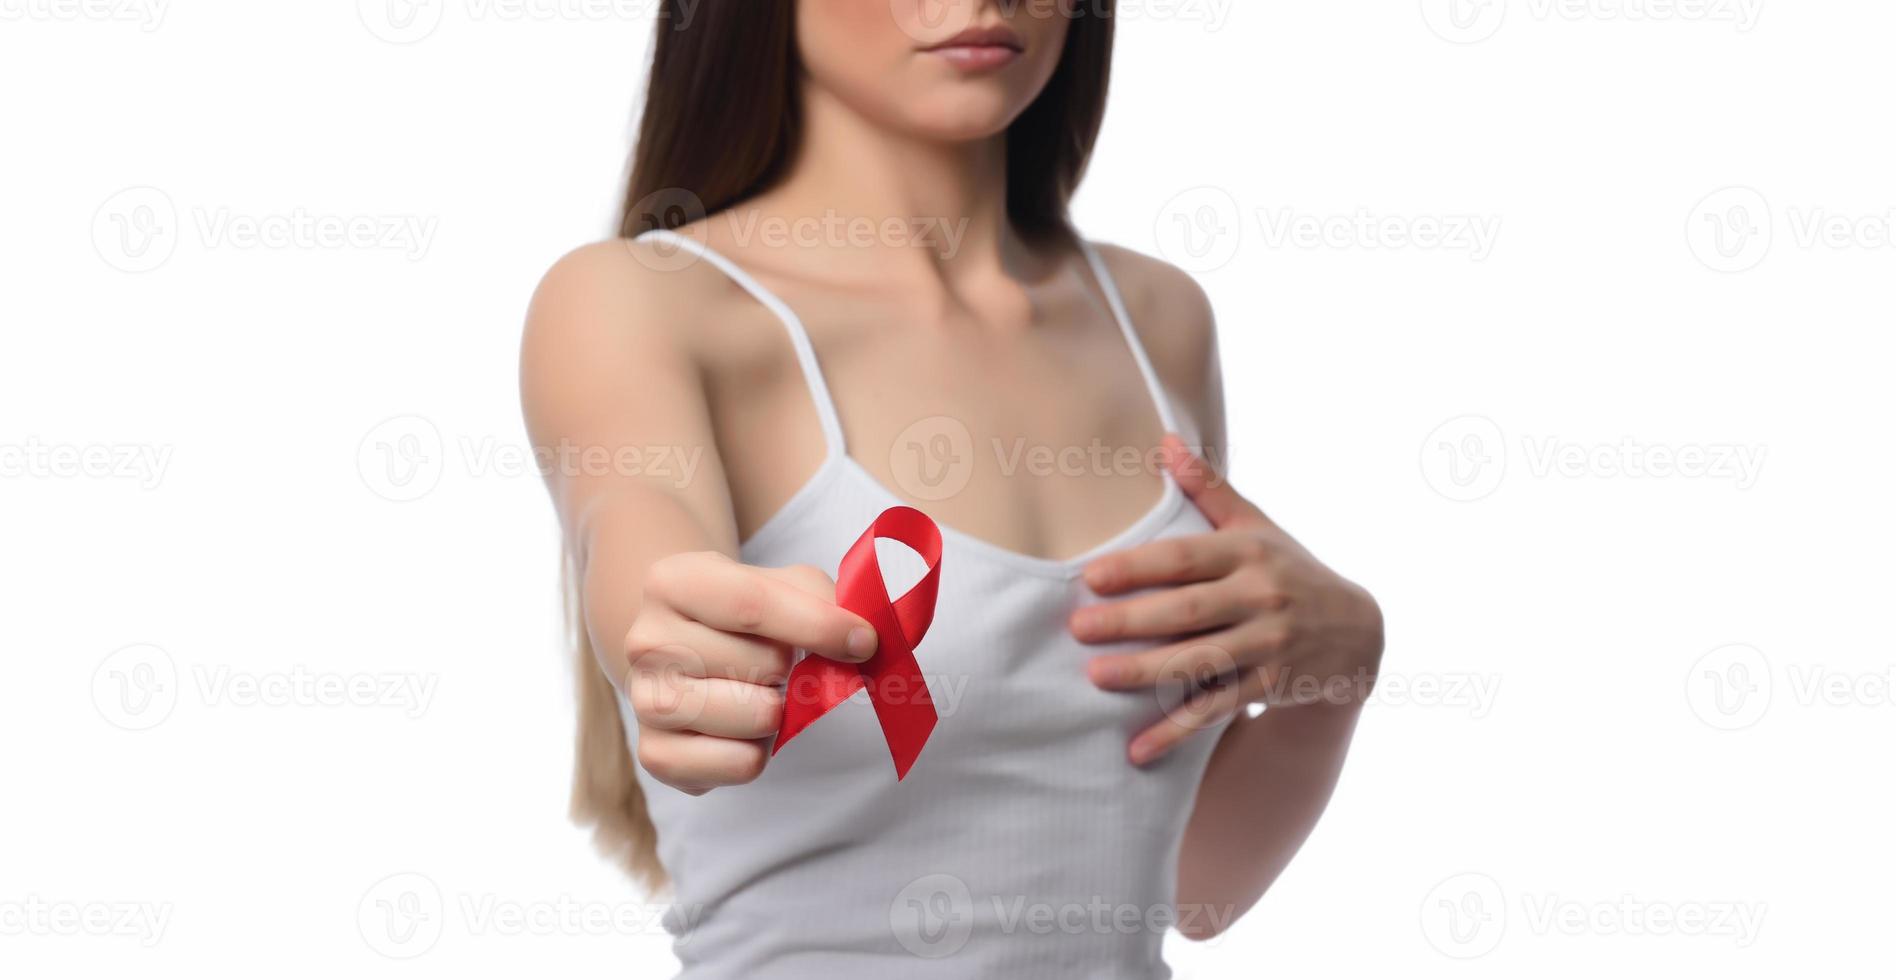 frau, die rotes band für dezember-welt-aids-tag hält. Gesundheitskonzept foto